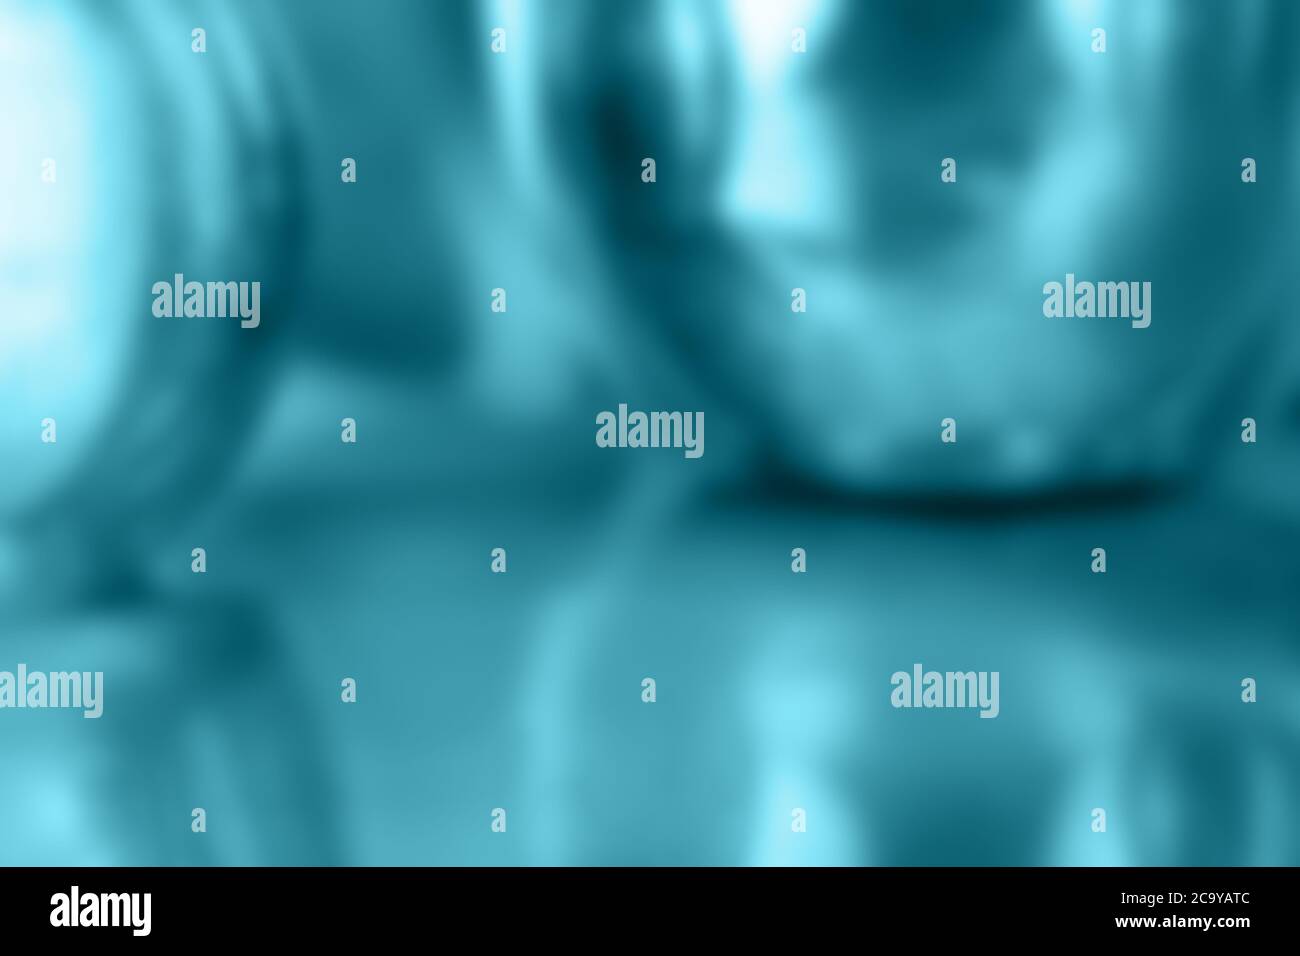 sfondo digitale astratto in blu turchese iridescente con forme sferiche e riflessi Foto Stock